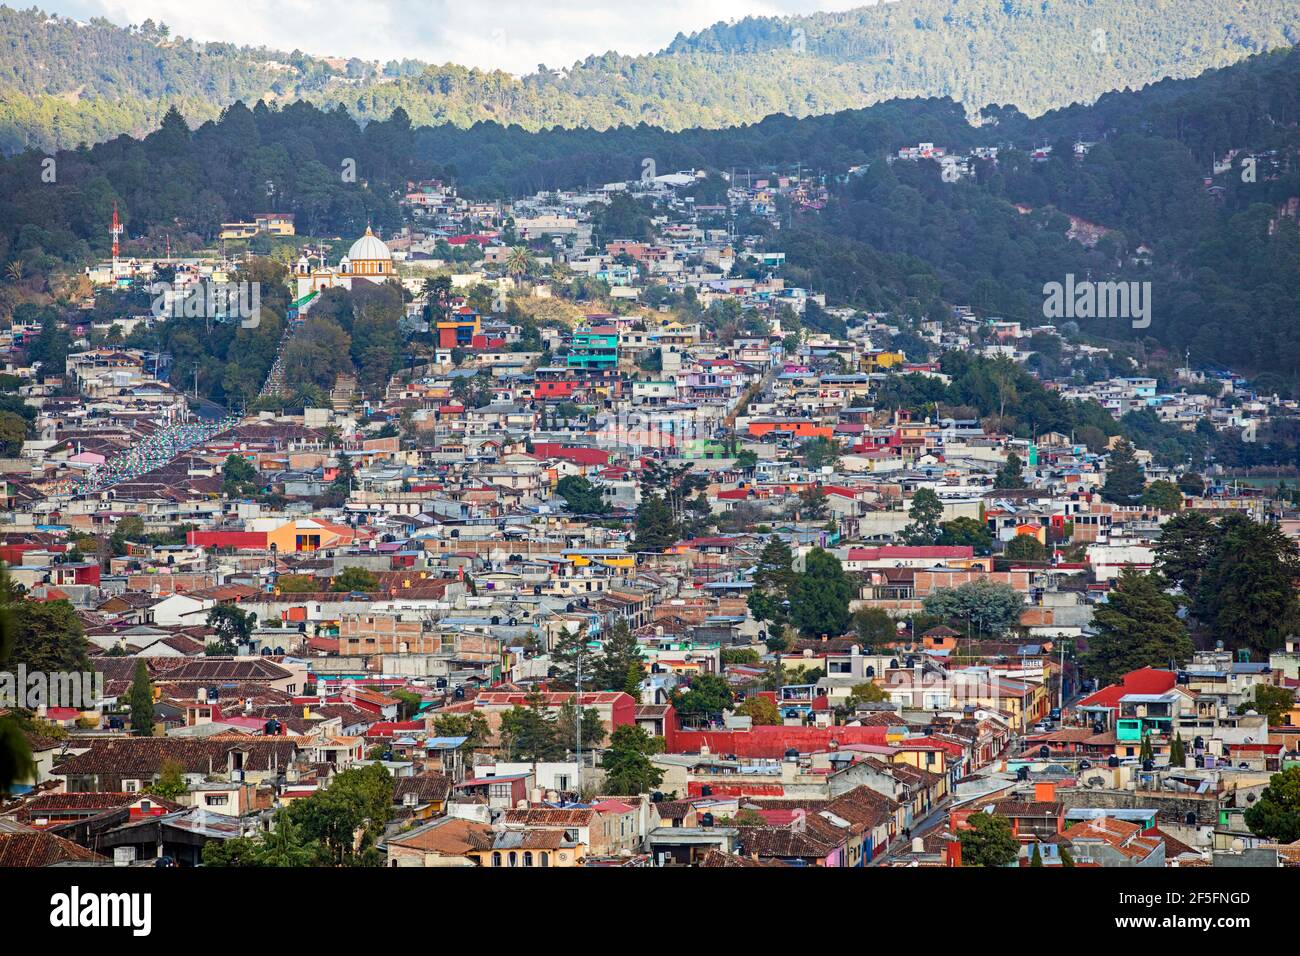 Aerial view over the Mexican city San Cristóbal de las Casas / Jovel, Chiapas, southern Mexico Stock Photo